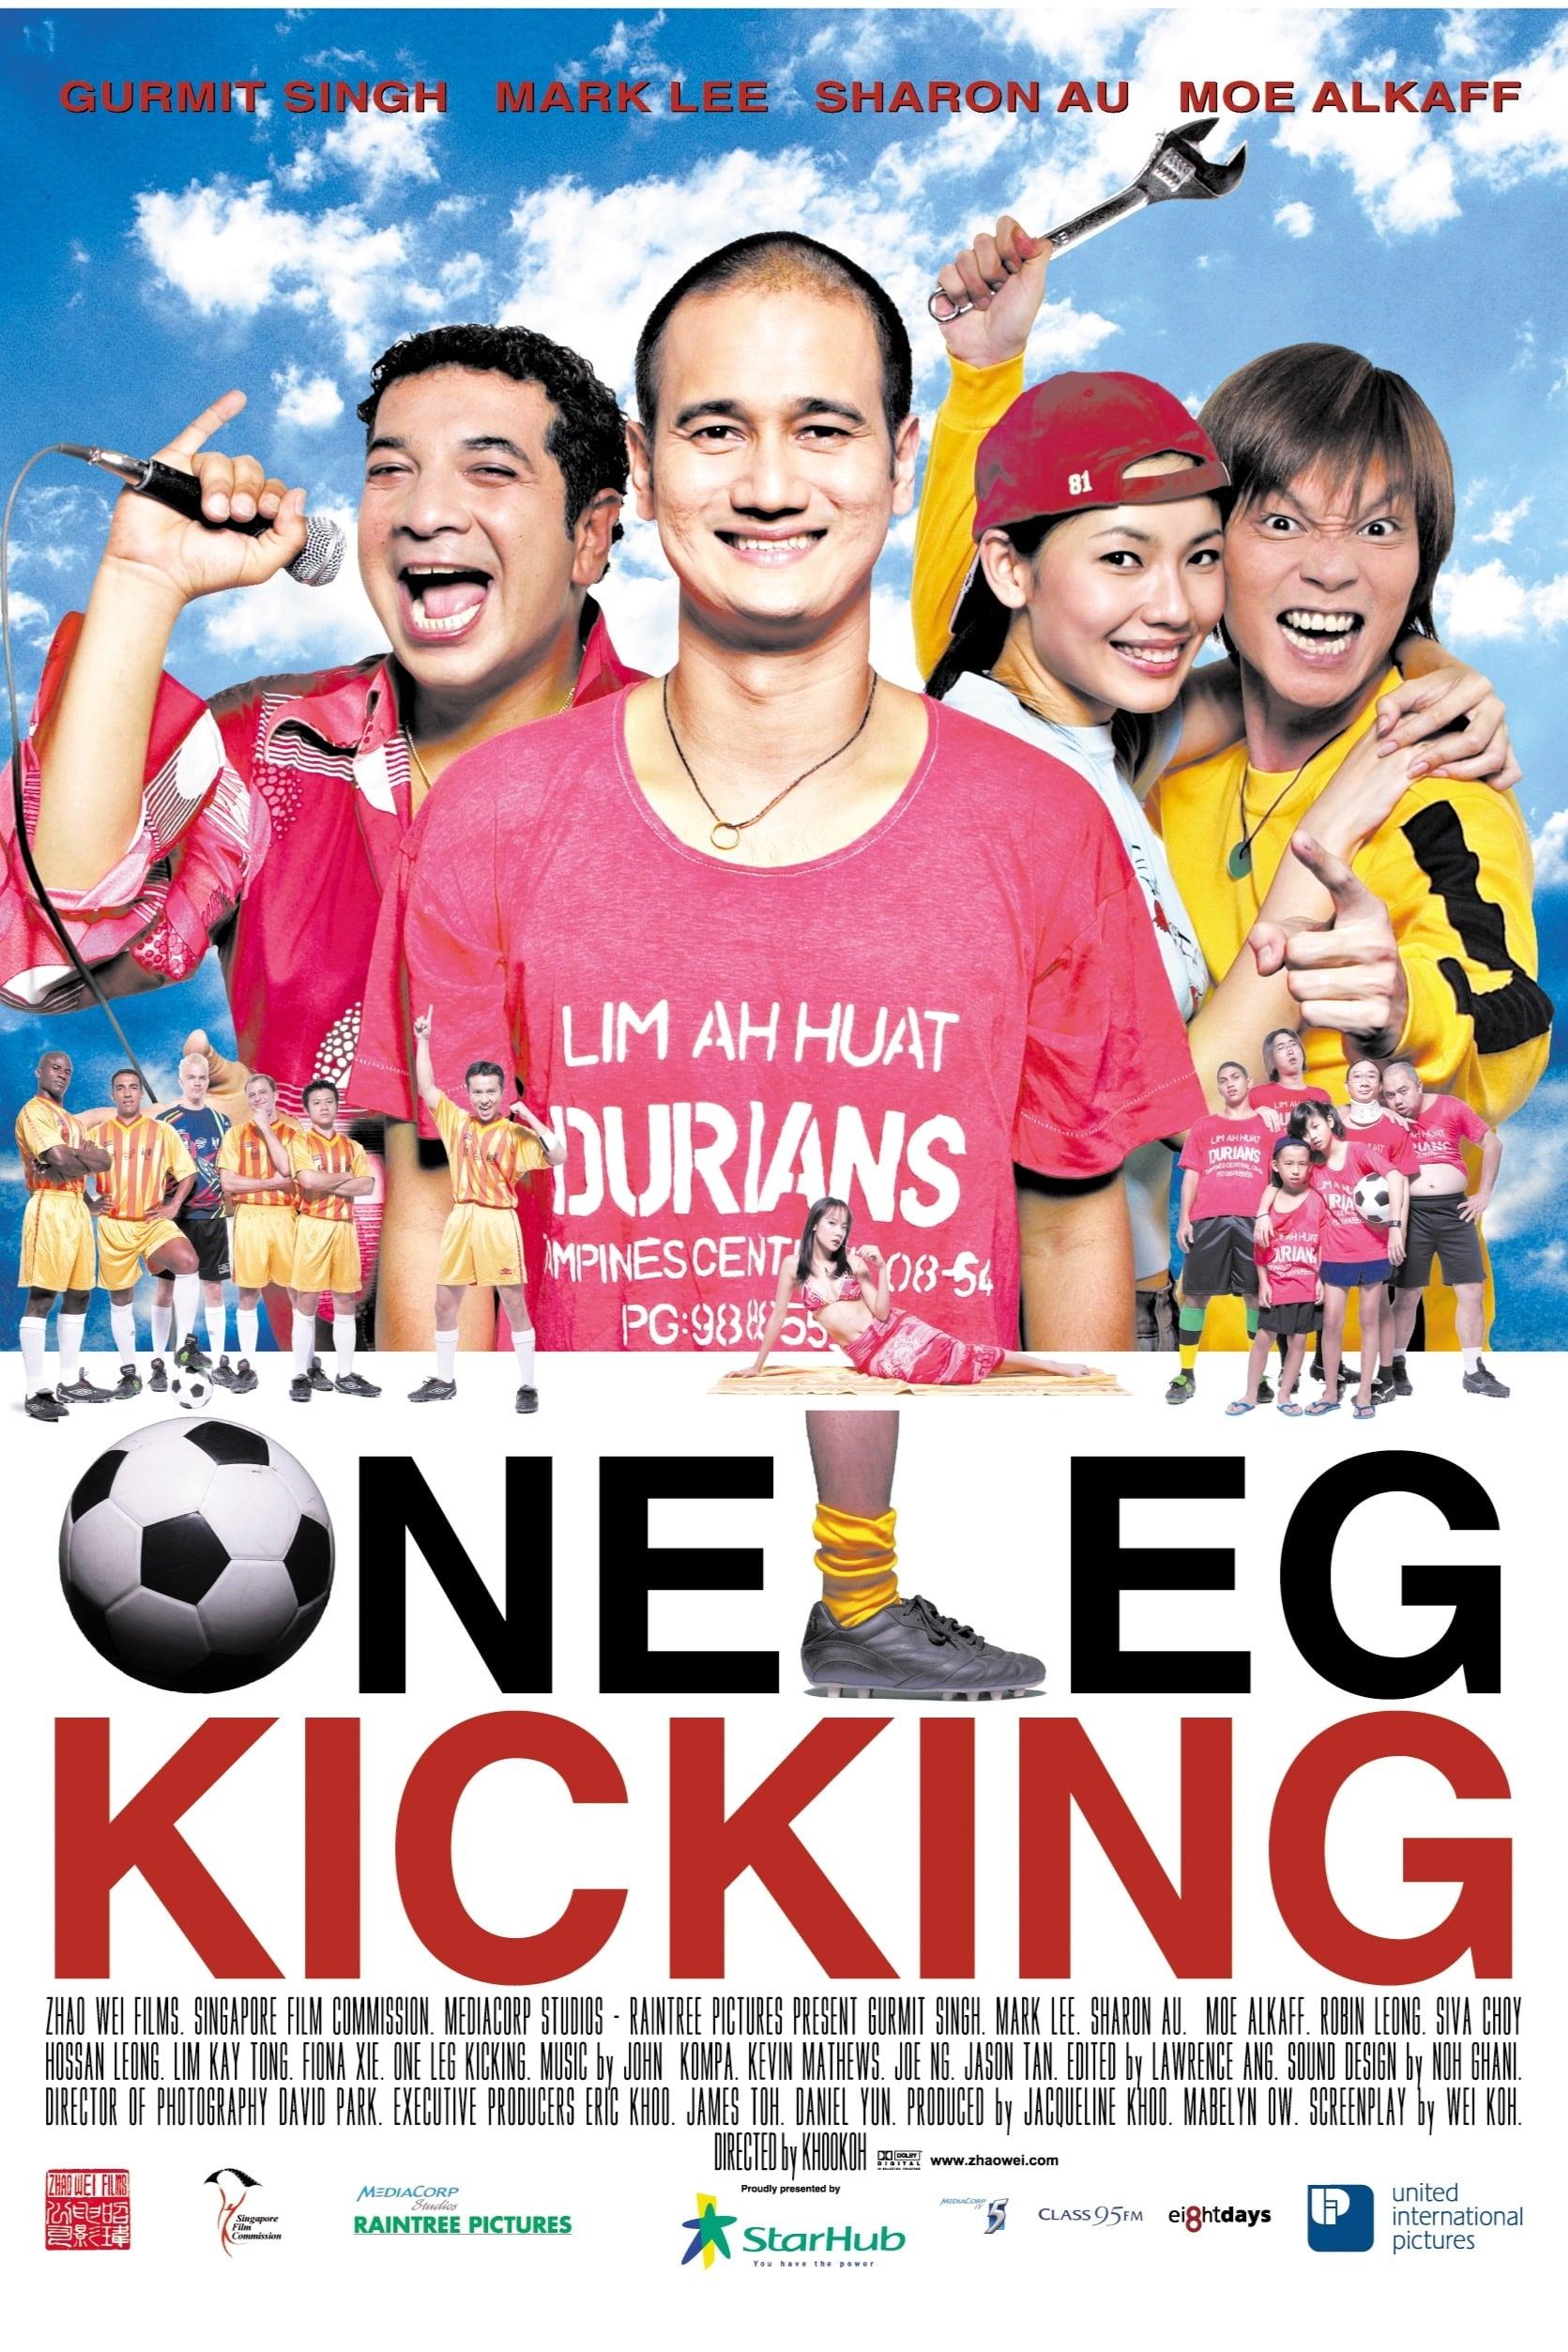 One Leg Kicking poster